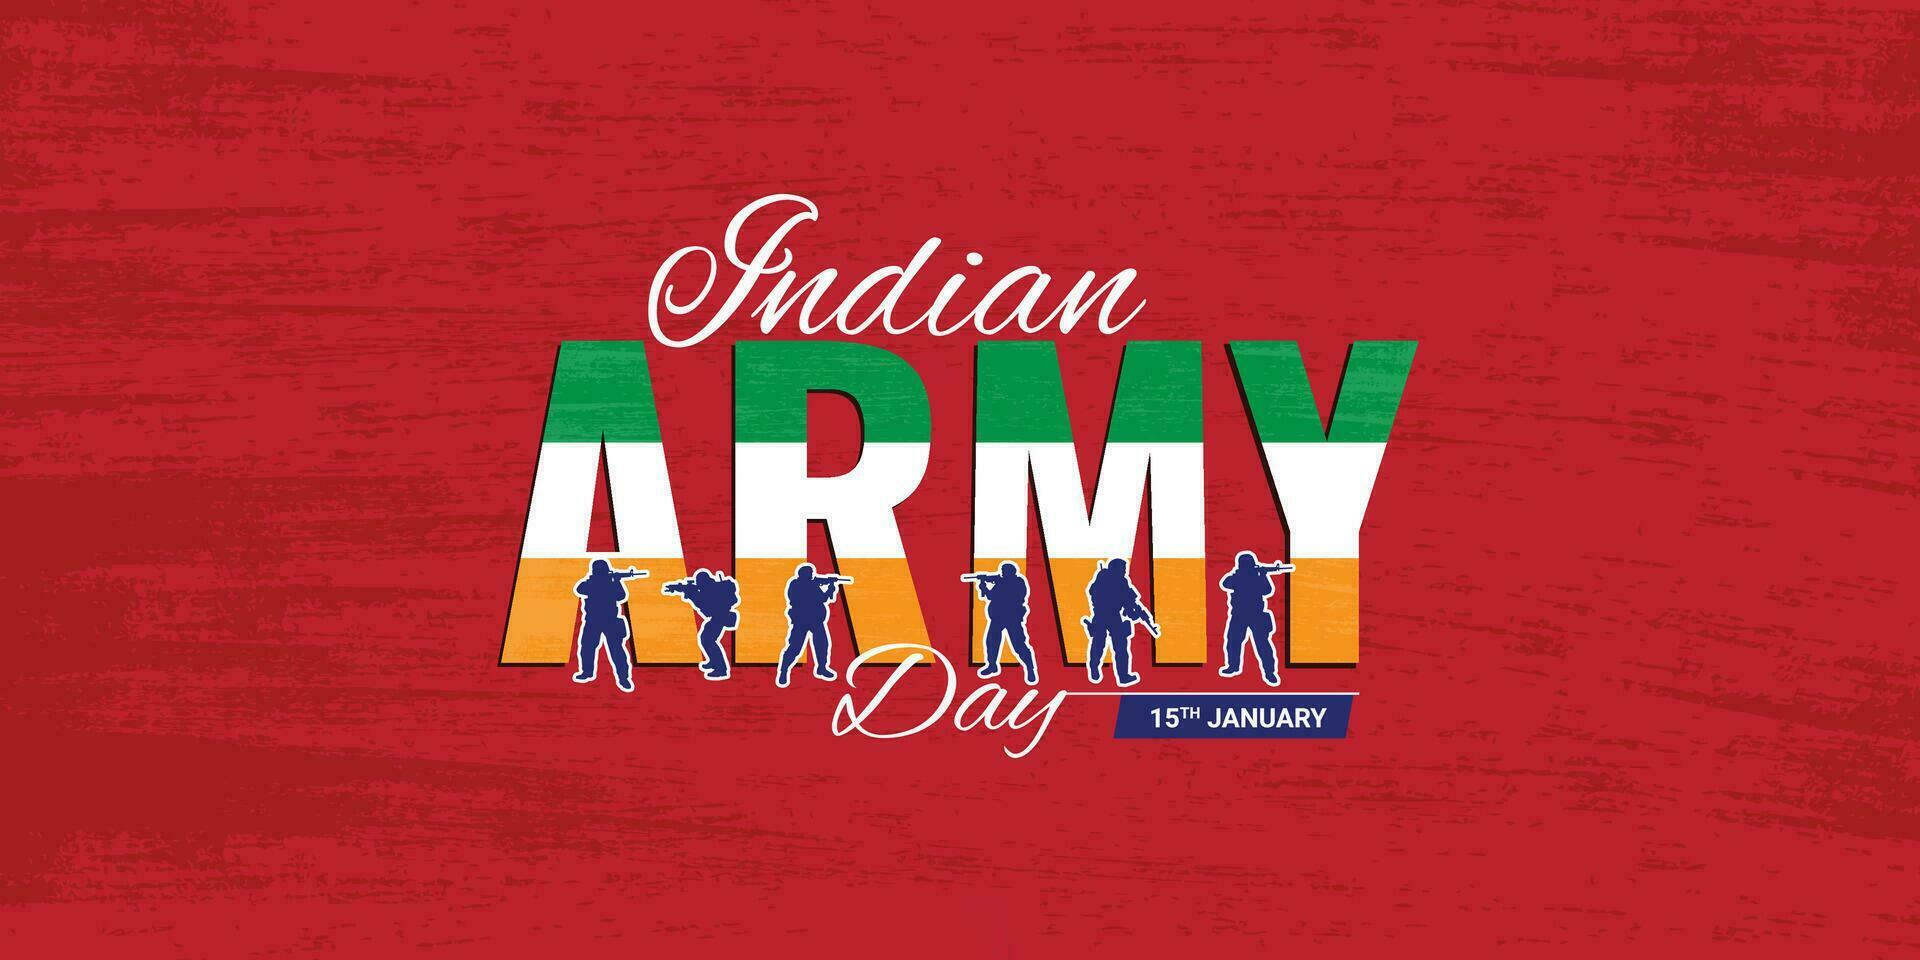 vector ilustración de indio Ejército día, celebrando el victoria de el indio Ejército en república día independencia día. amar Javan jyoti. kargil victoria día. indio Ejército mártires día editable diseño